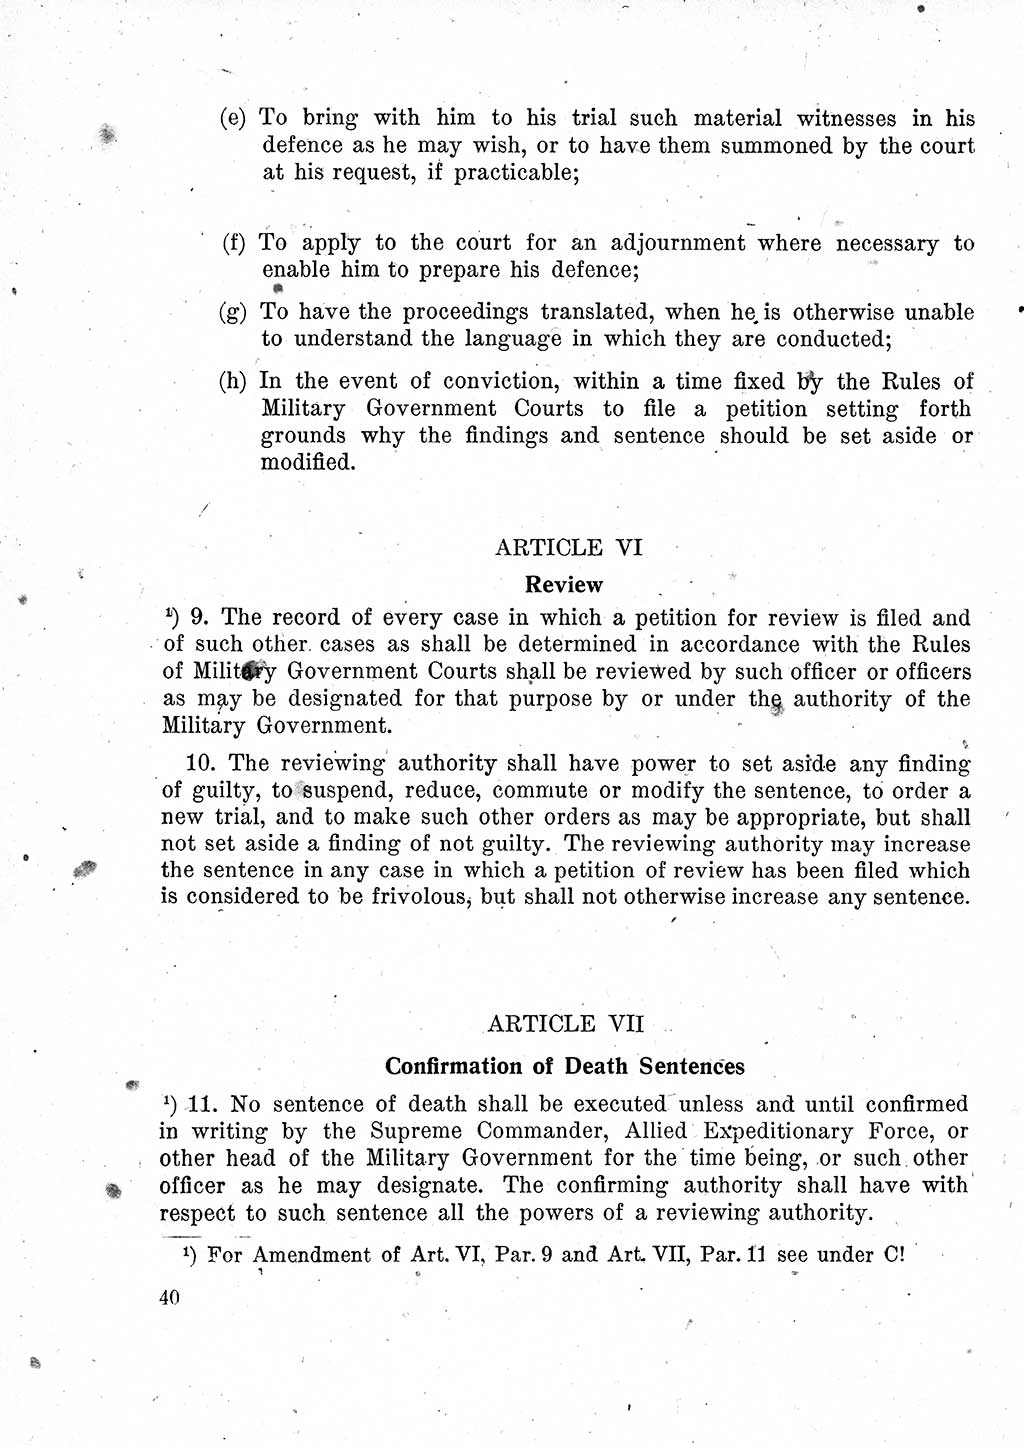 Das Recht der Besatzungsmacht (Deutschland), Proklamationen, Deklerationen, Verordnungen, Gesetze und Bekanntmachungen 1947, Seite 40 (R. Bes. Dtl. 1947, S. 40)